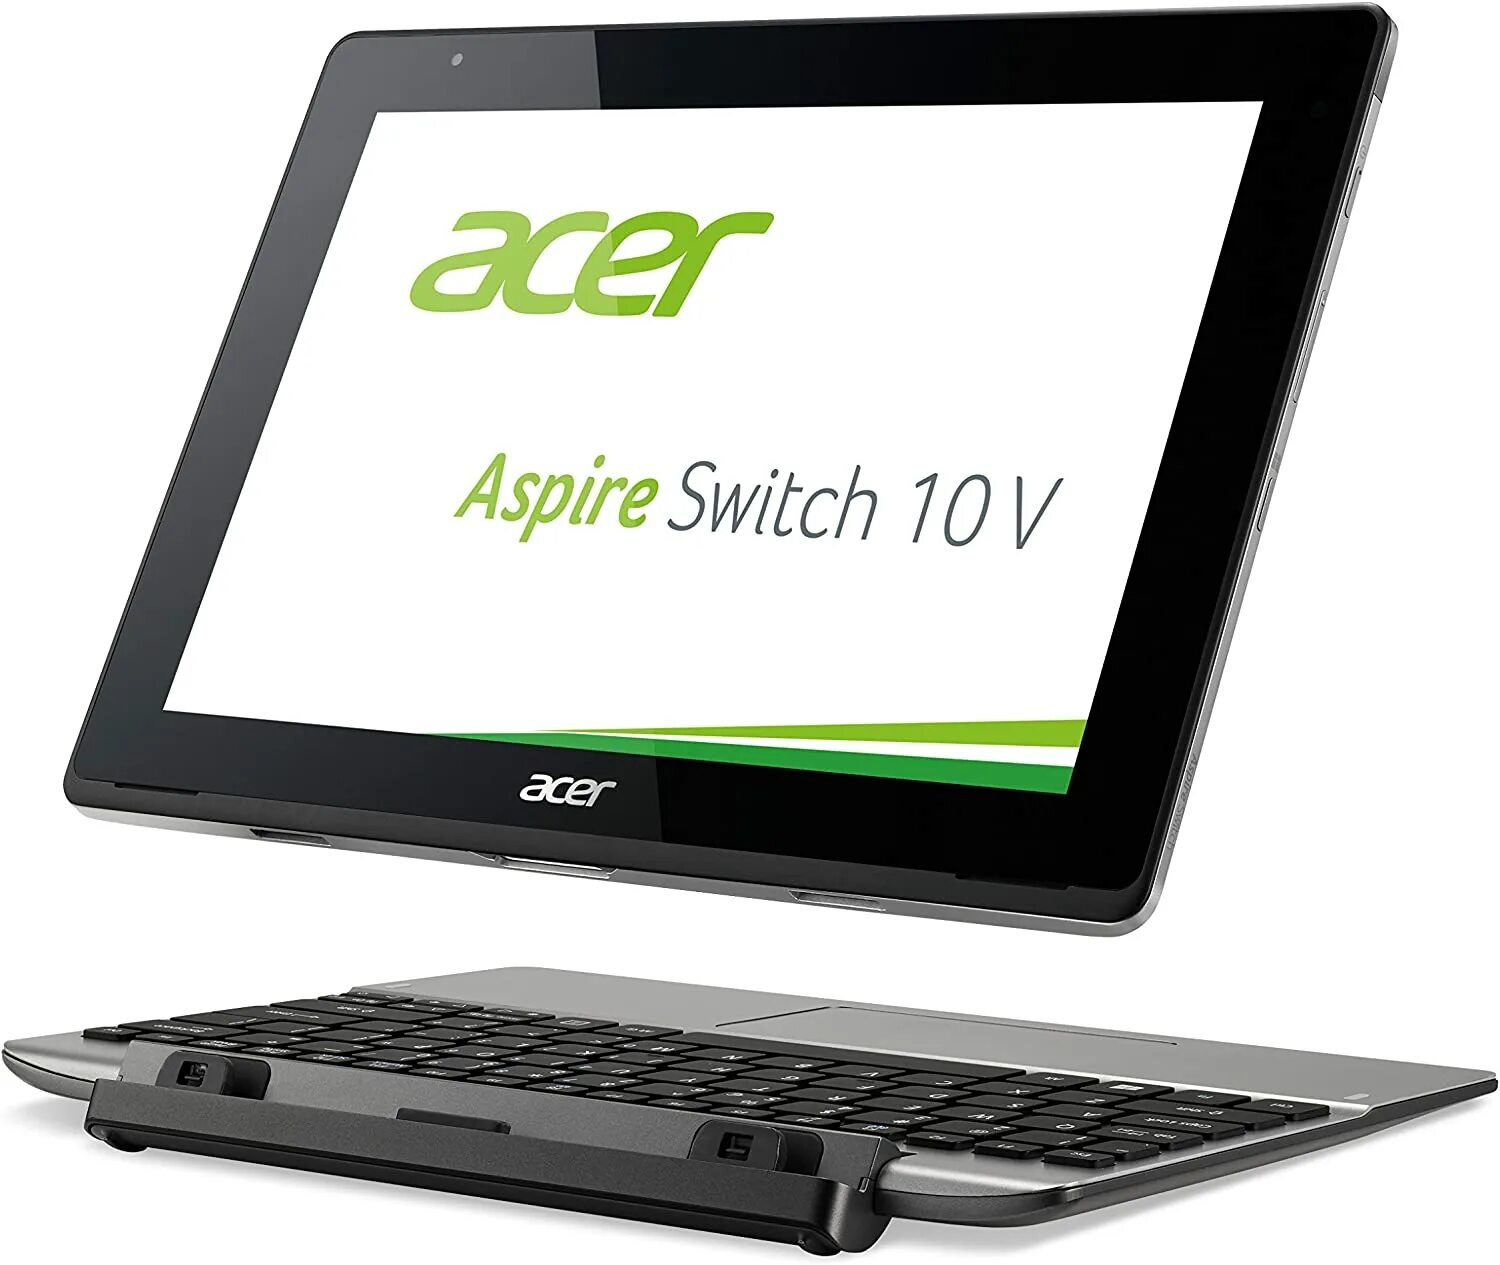 Acer Switch 10. Acer Aspire Switch 10. Acer Switch one 10. Acer Aspire Switch 10v.